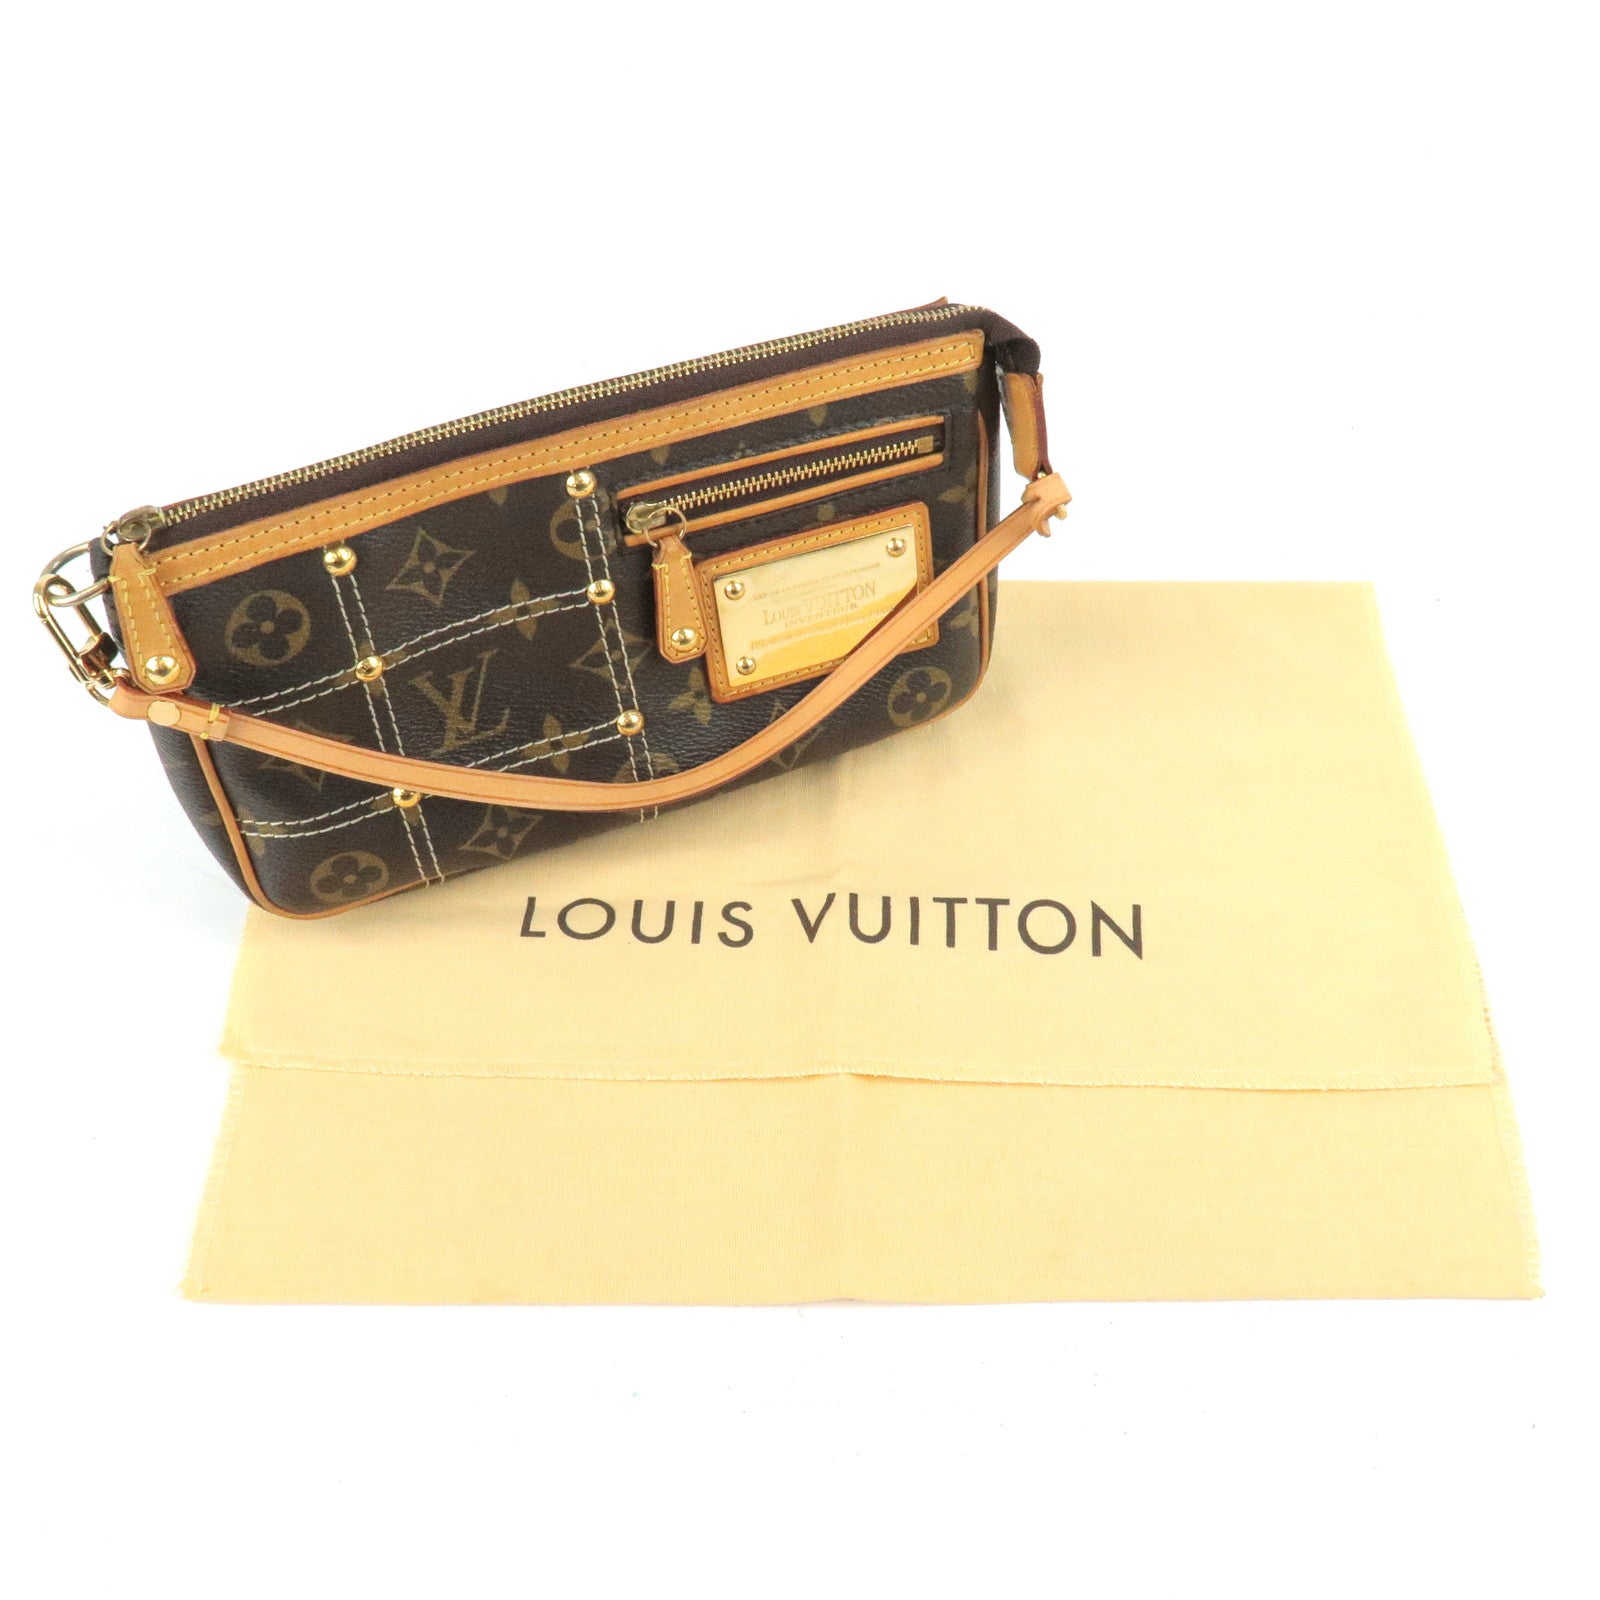 Louis Vuitton The Pochette Accessoires Monogram Vernis Patent Leather  Shoulder Bag on SALE